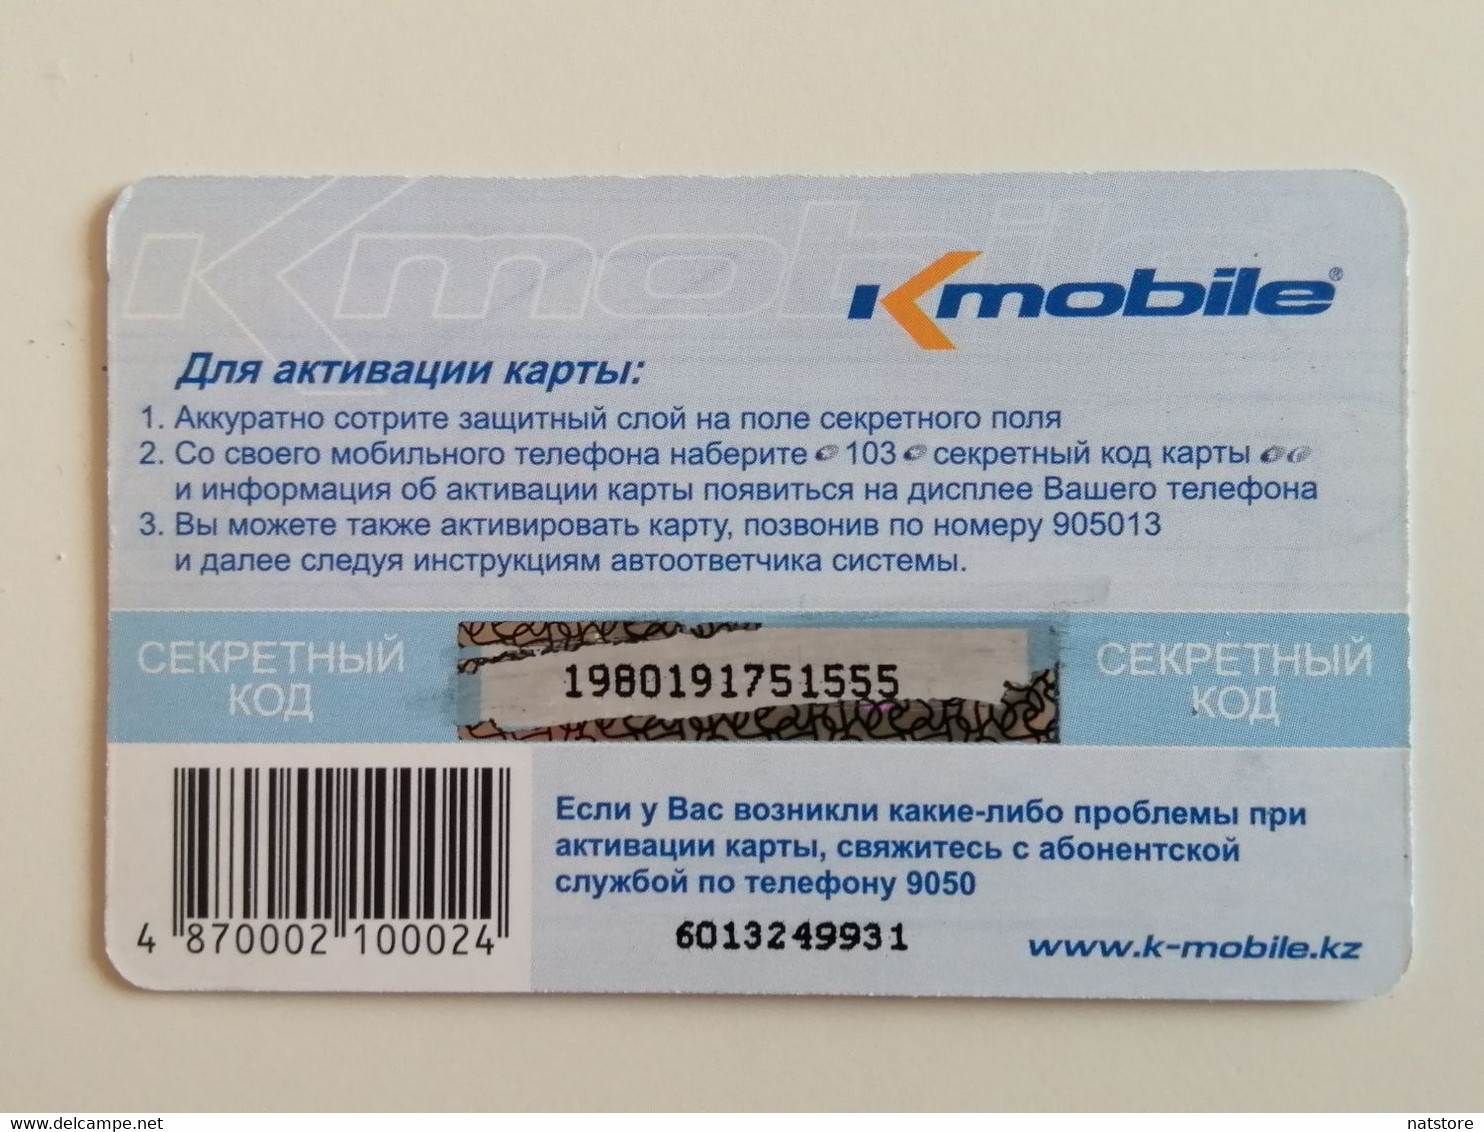 KAZAKHSTAN..PHONECARD..K-MOBILE...1000 - Telecom Operators